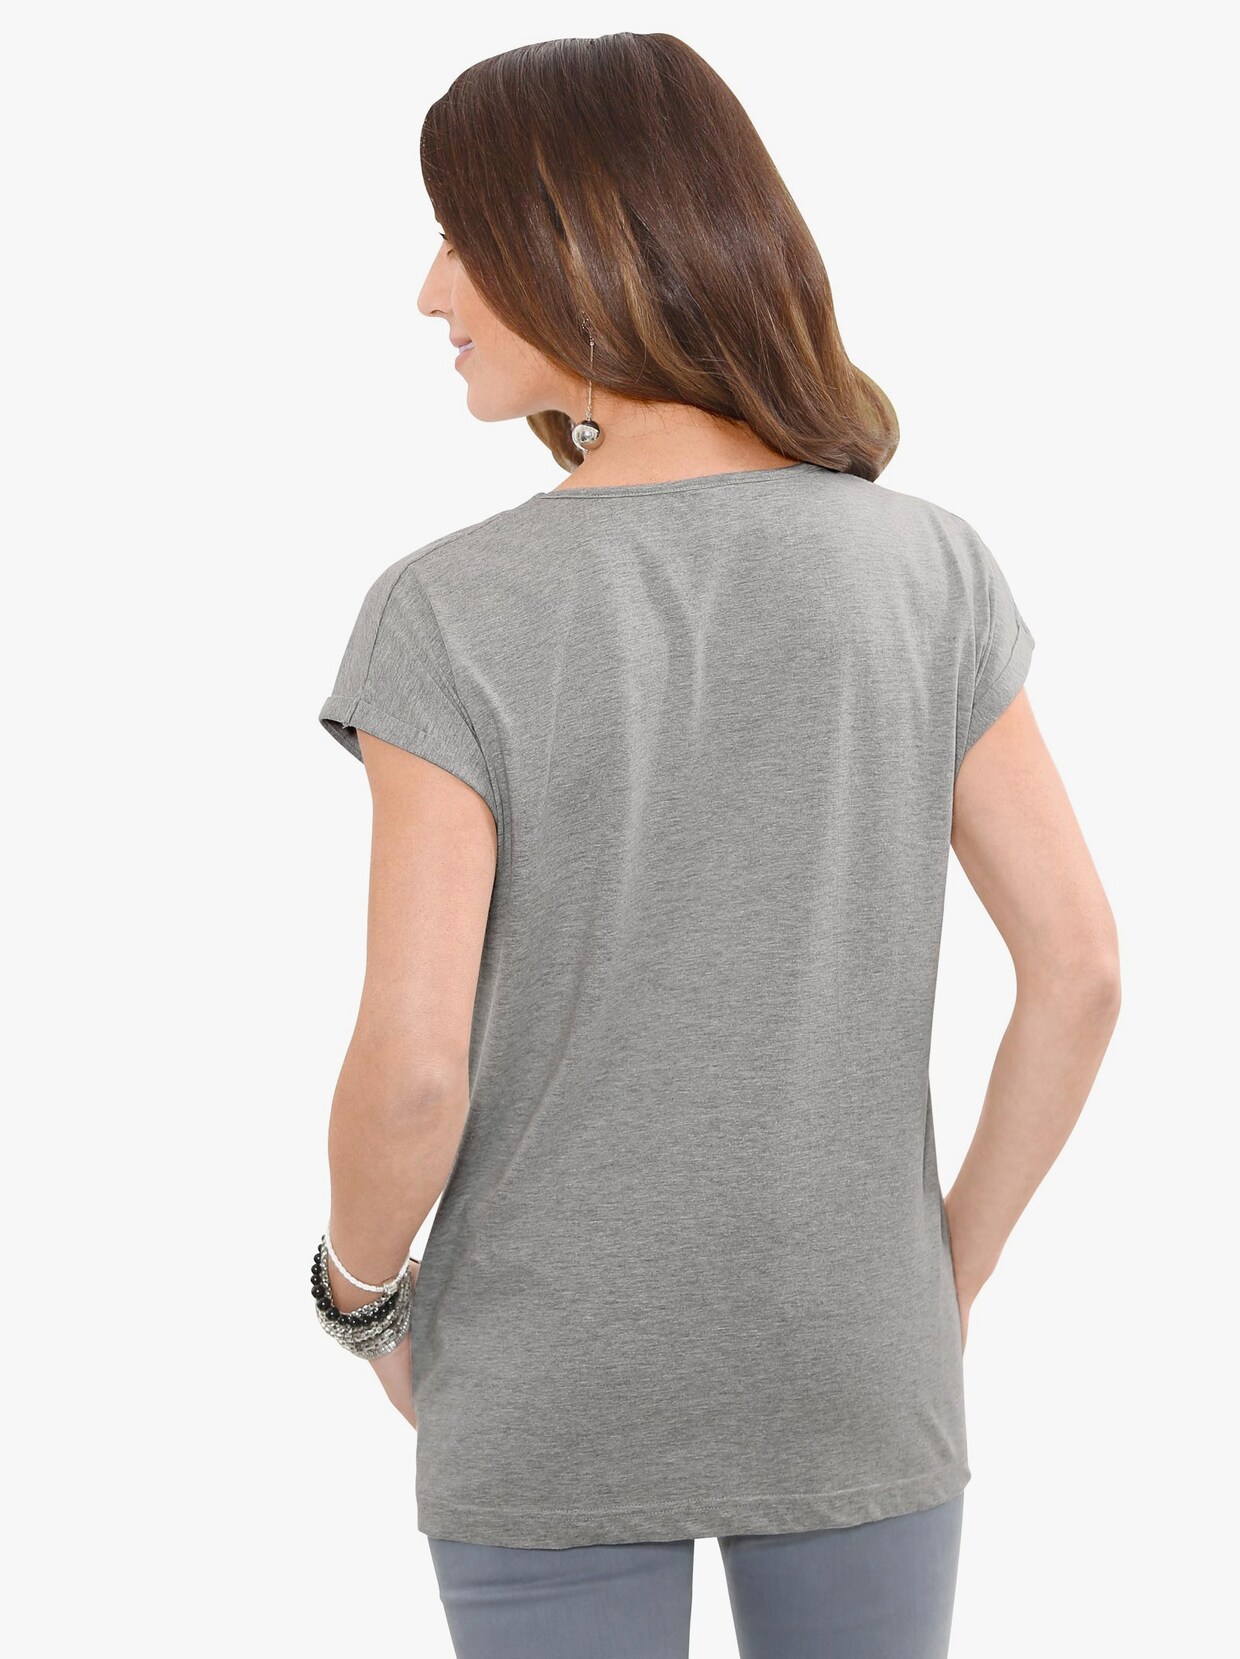 Tričko s kulatým výstřihem - šedá-melír